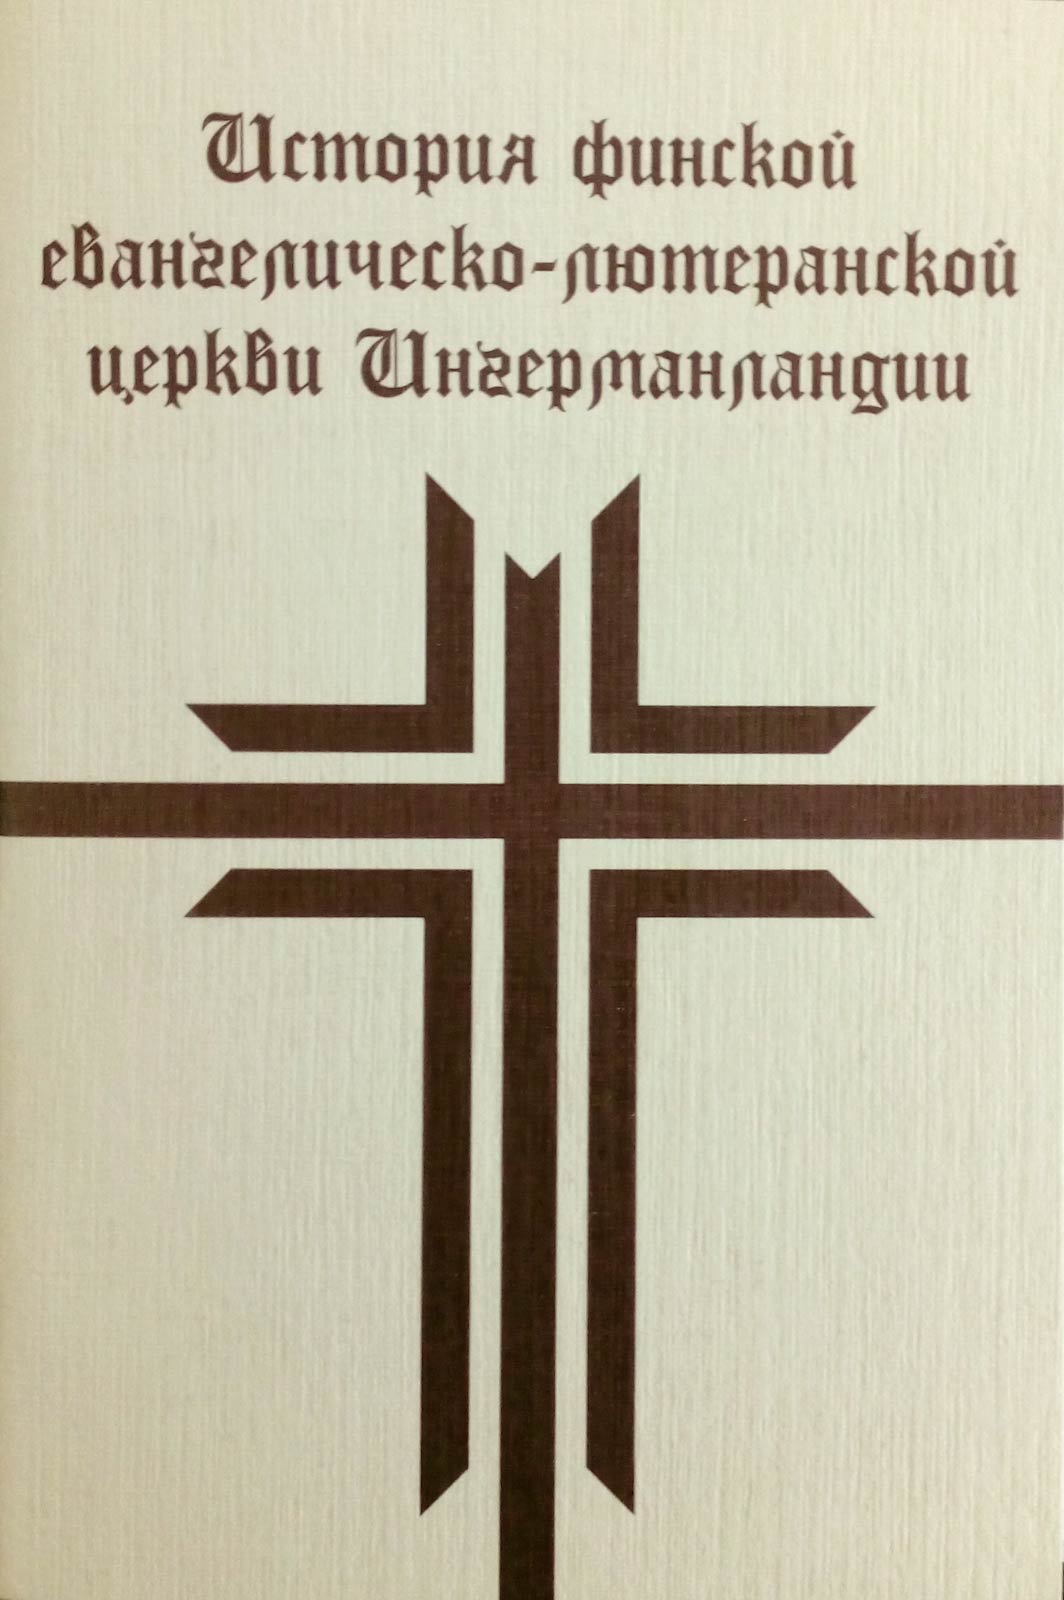 История финской евангелическо-лютеранской церкви Ингерманландии (набор из 40 открыток)